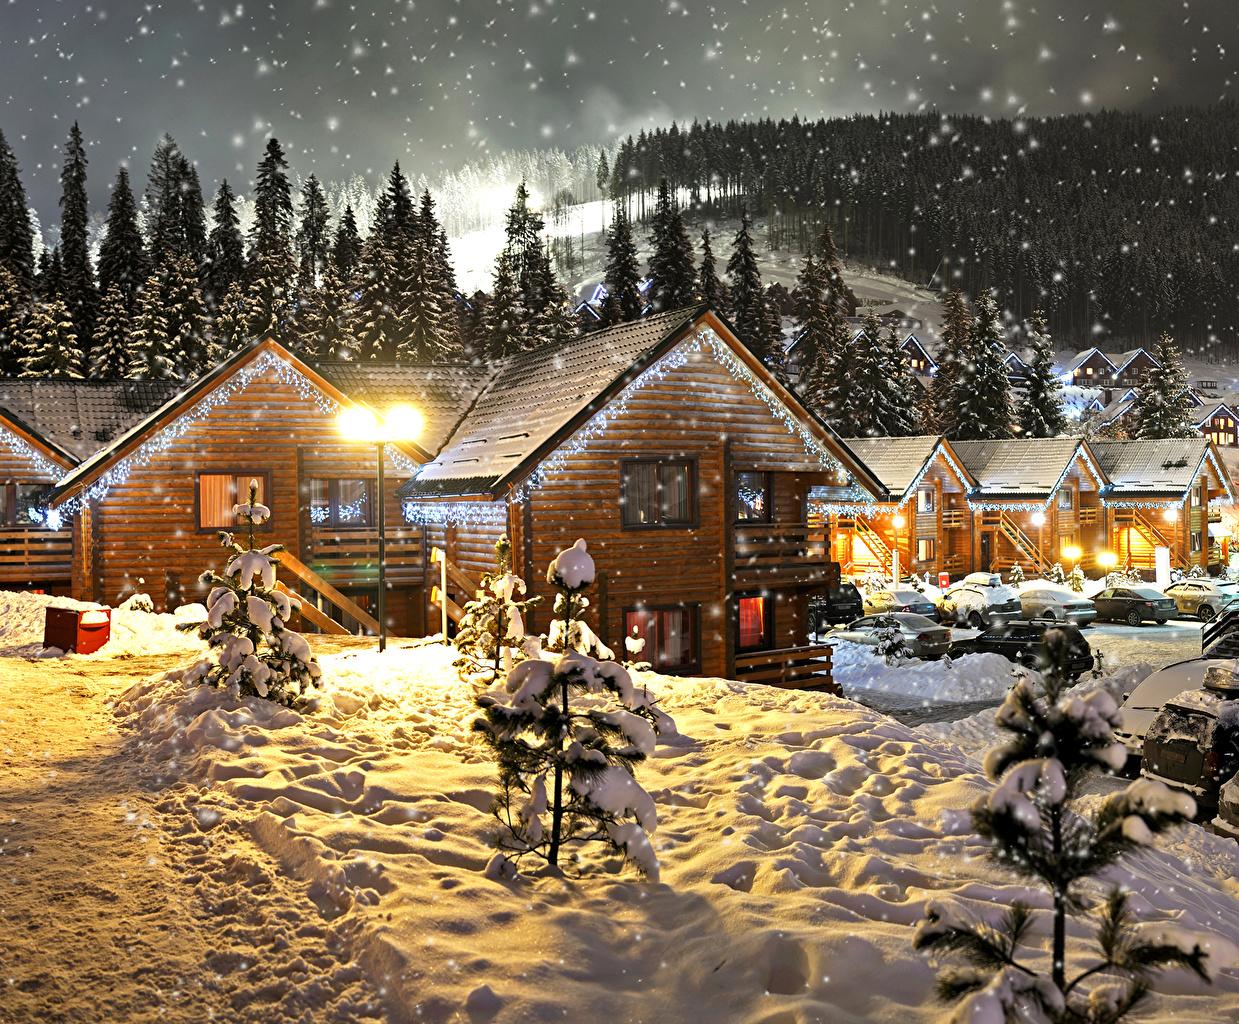 Фотографии Новый год Зима Снег Ночные Гирлянда Уличные фонари Здания